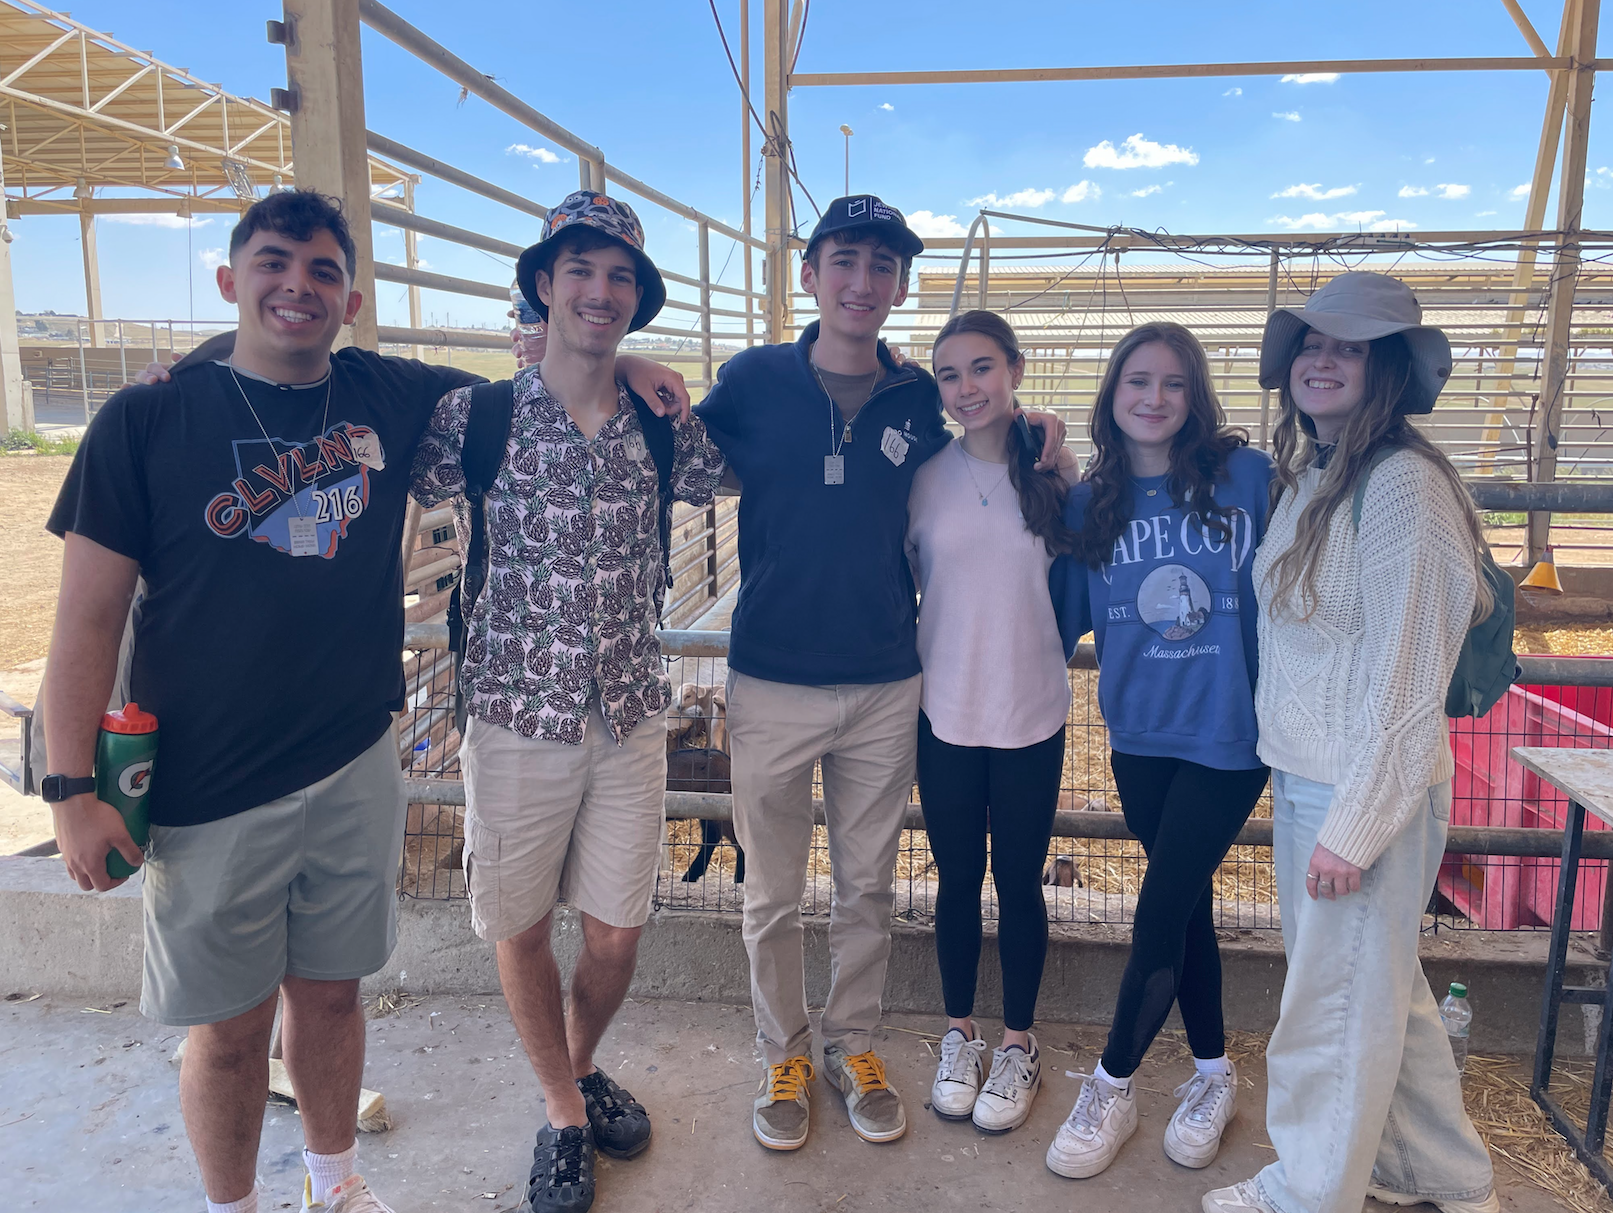 American teen volunteers change lives in Israel